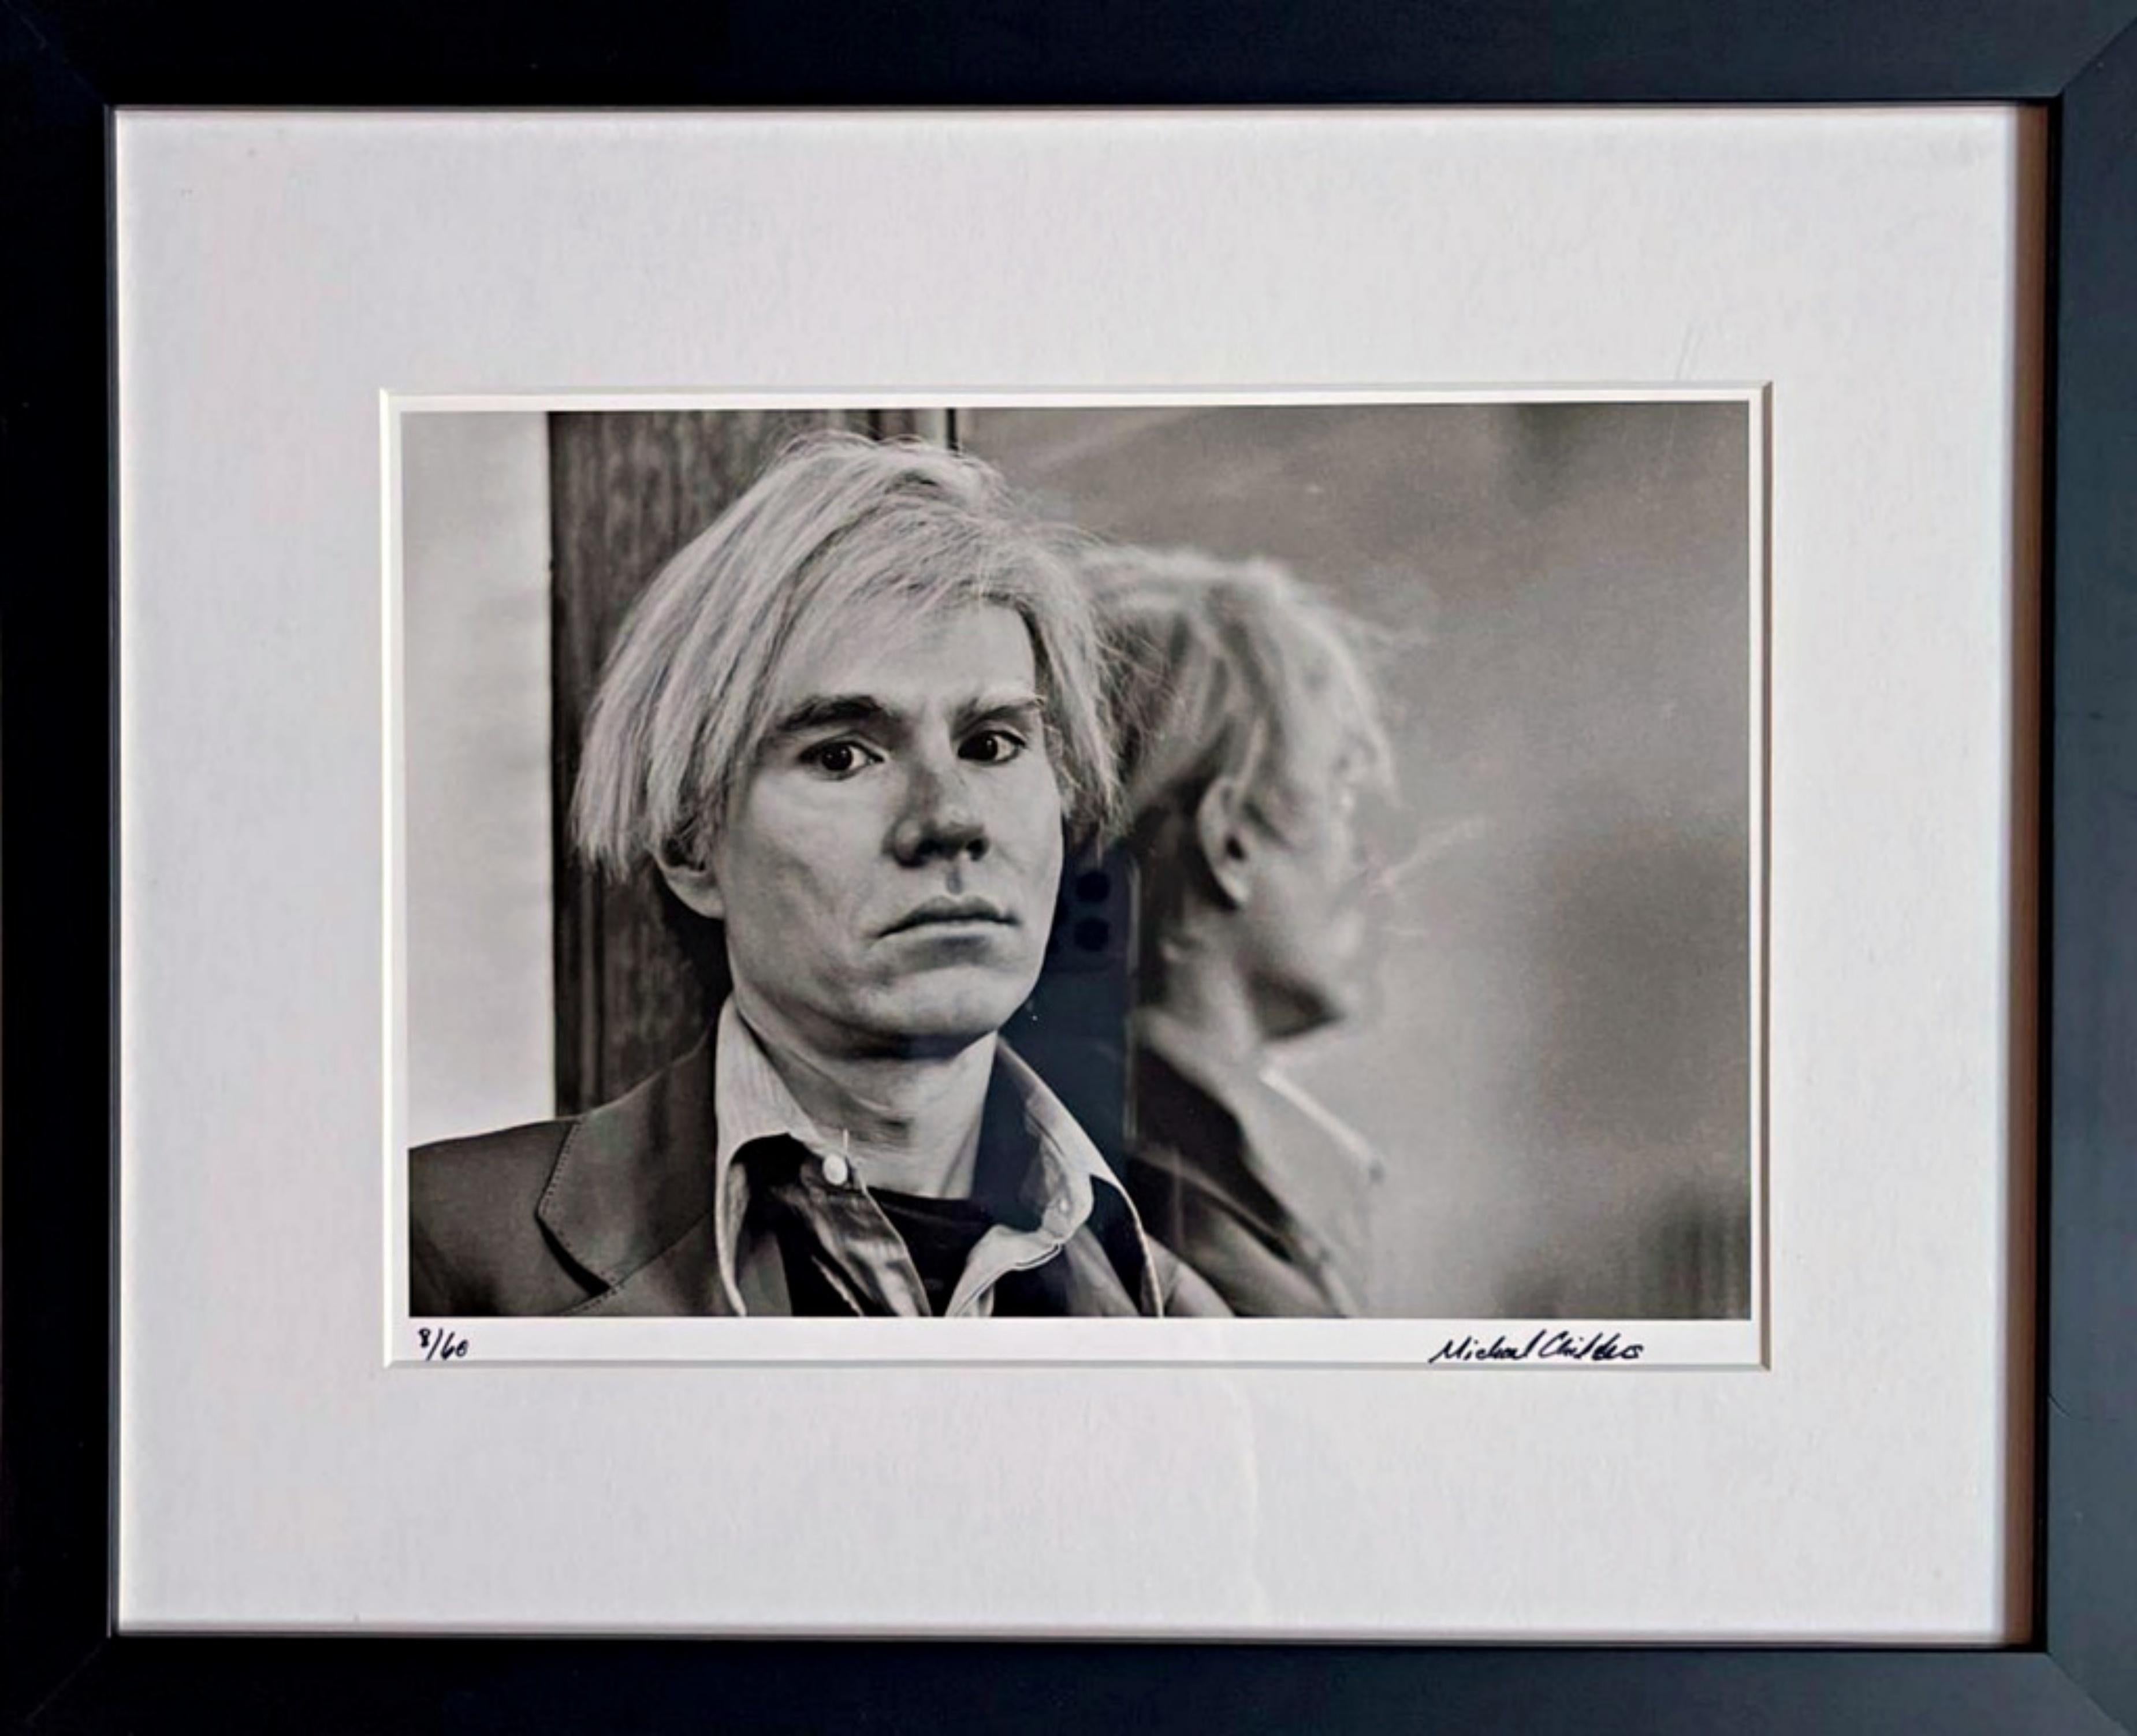 Black and White Photograph Michael Childers - Andy Warhol à New York, 1976, 2007, photographie signée à la main 8/60 pour le musée